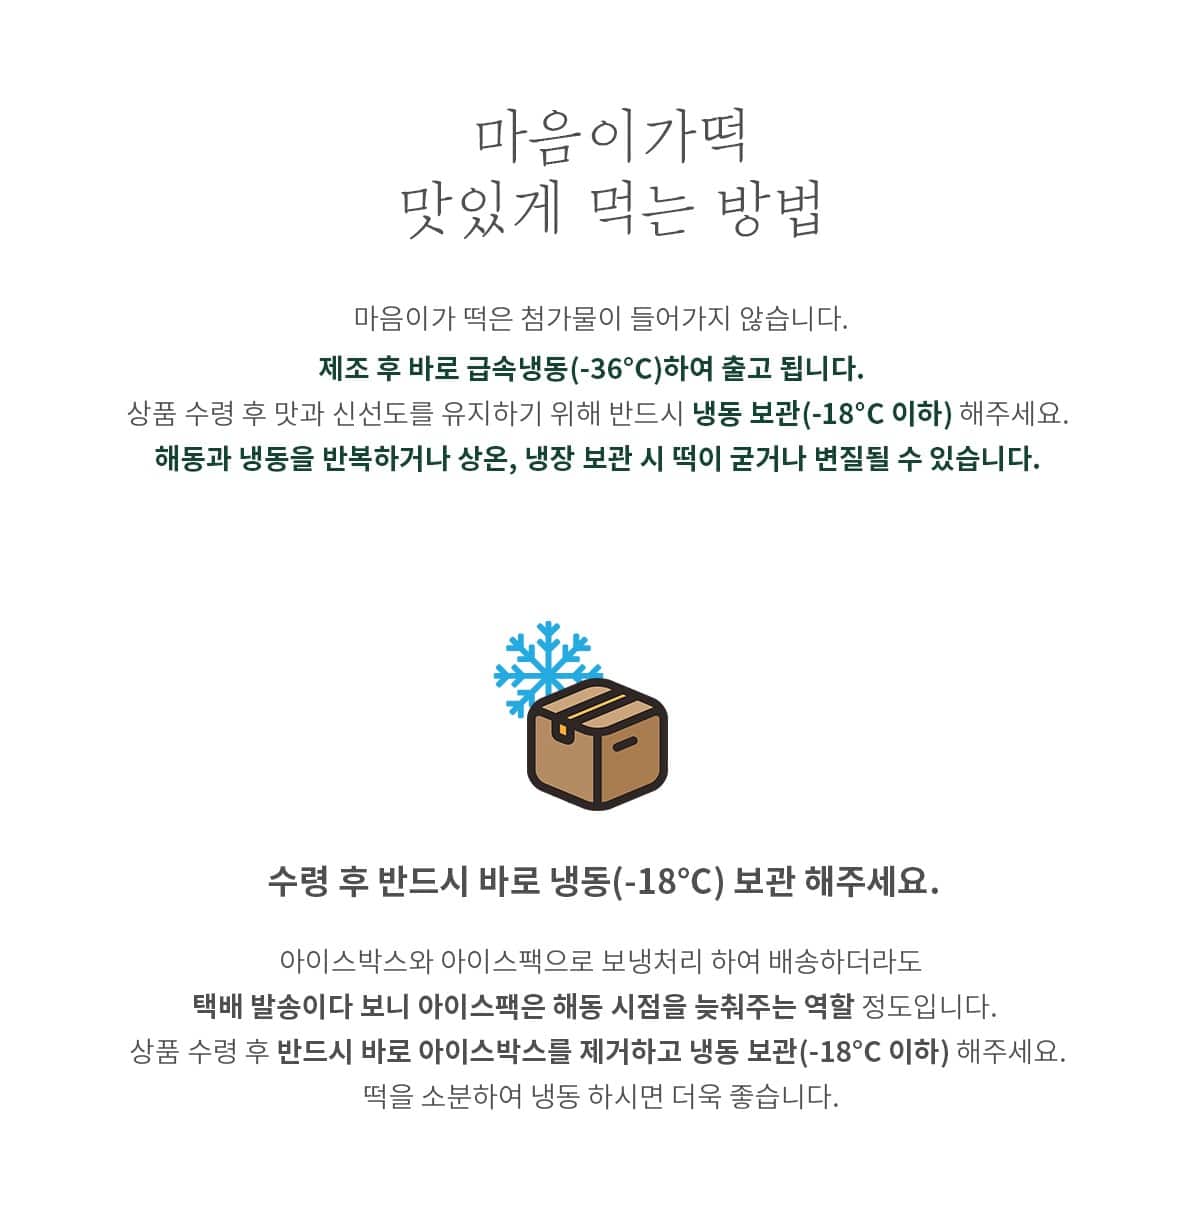 韓國食品-[마음이가] 행복 1호(콩쑥개떡+바나나떡+꿀떡+바람떡) (선물세트 1월 29일부터 선착순으로 배송합니다)